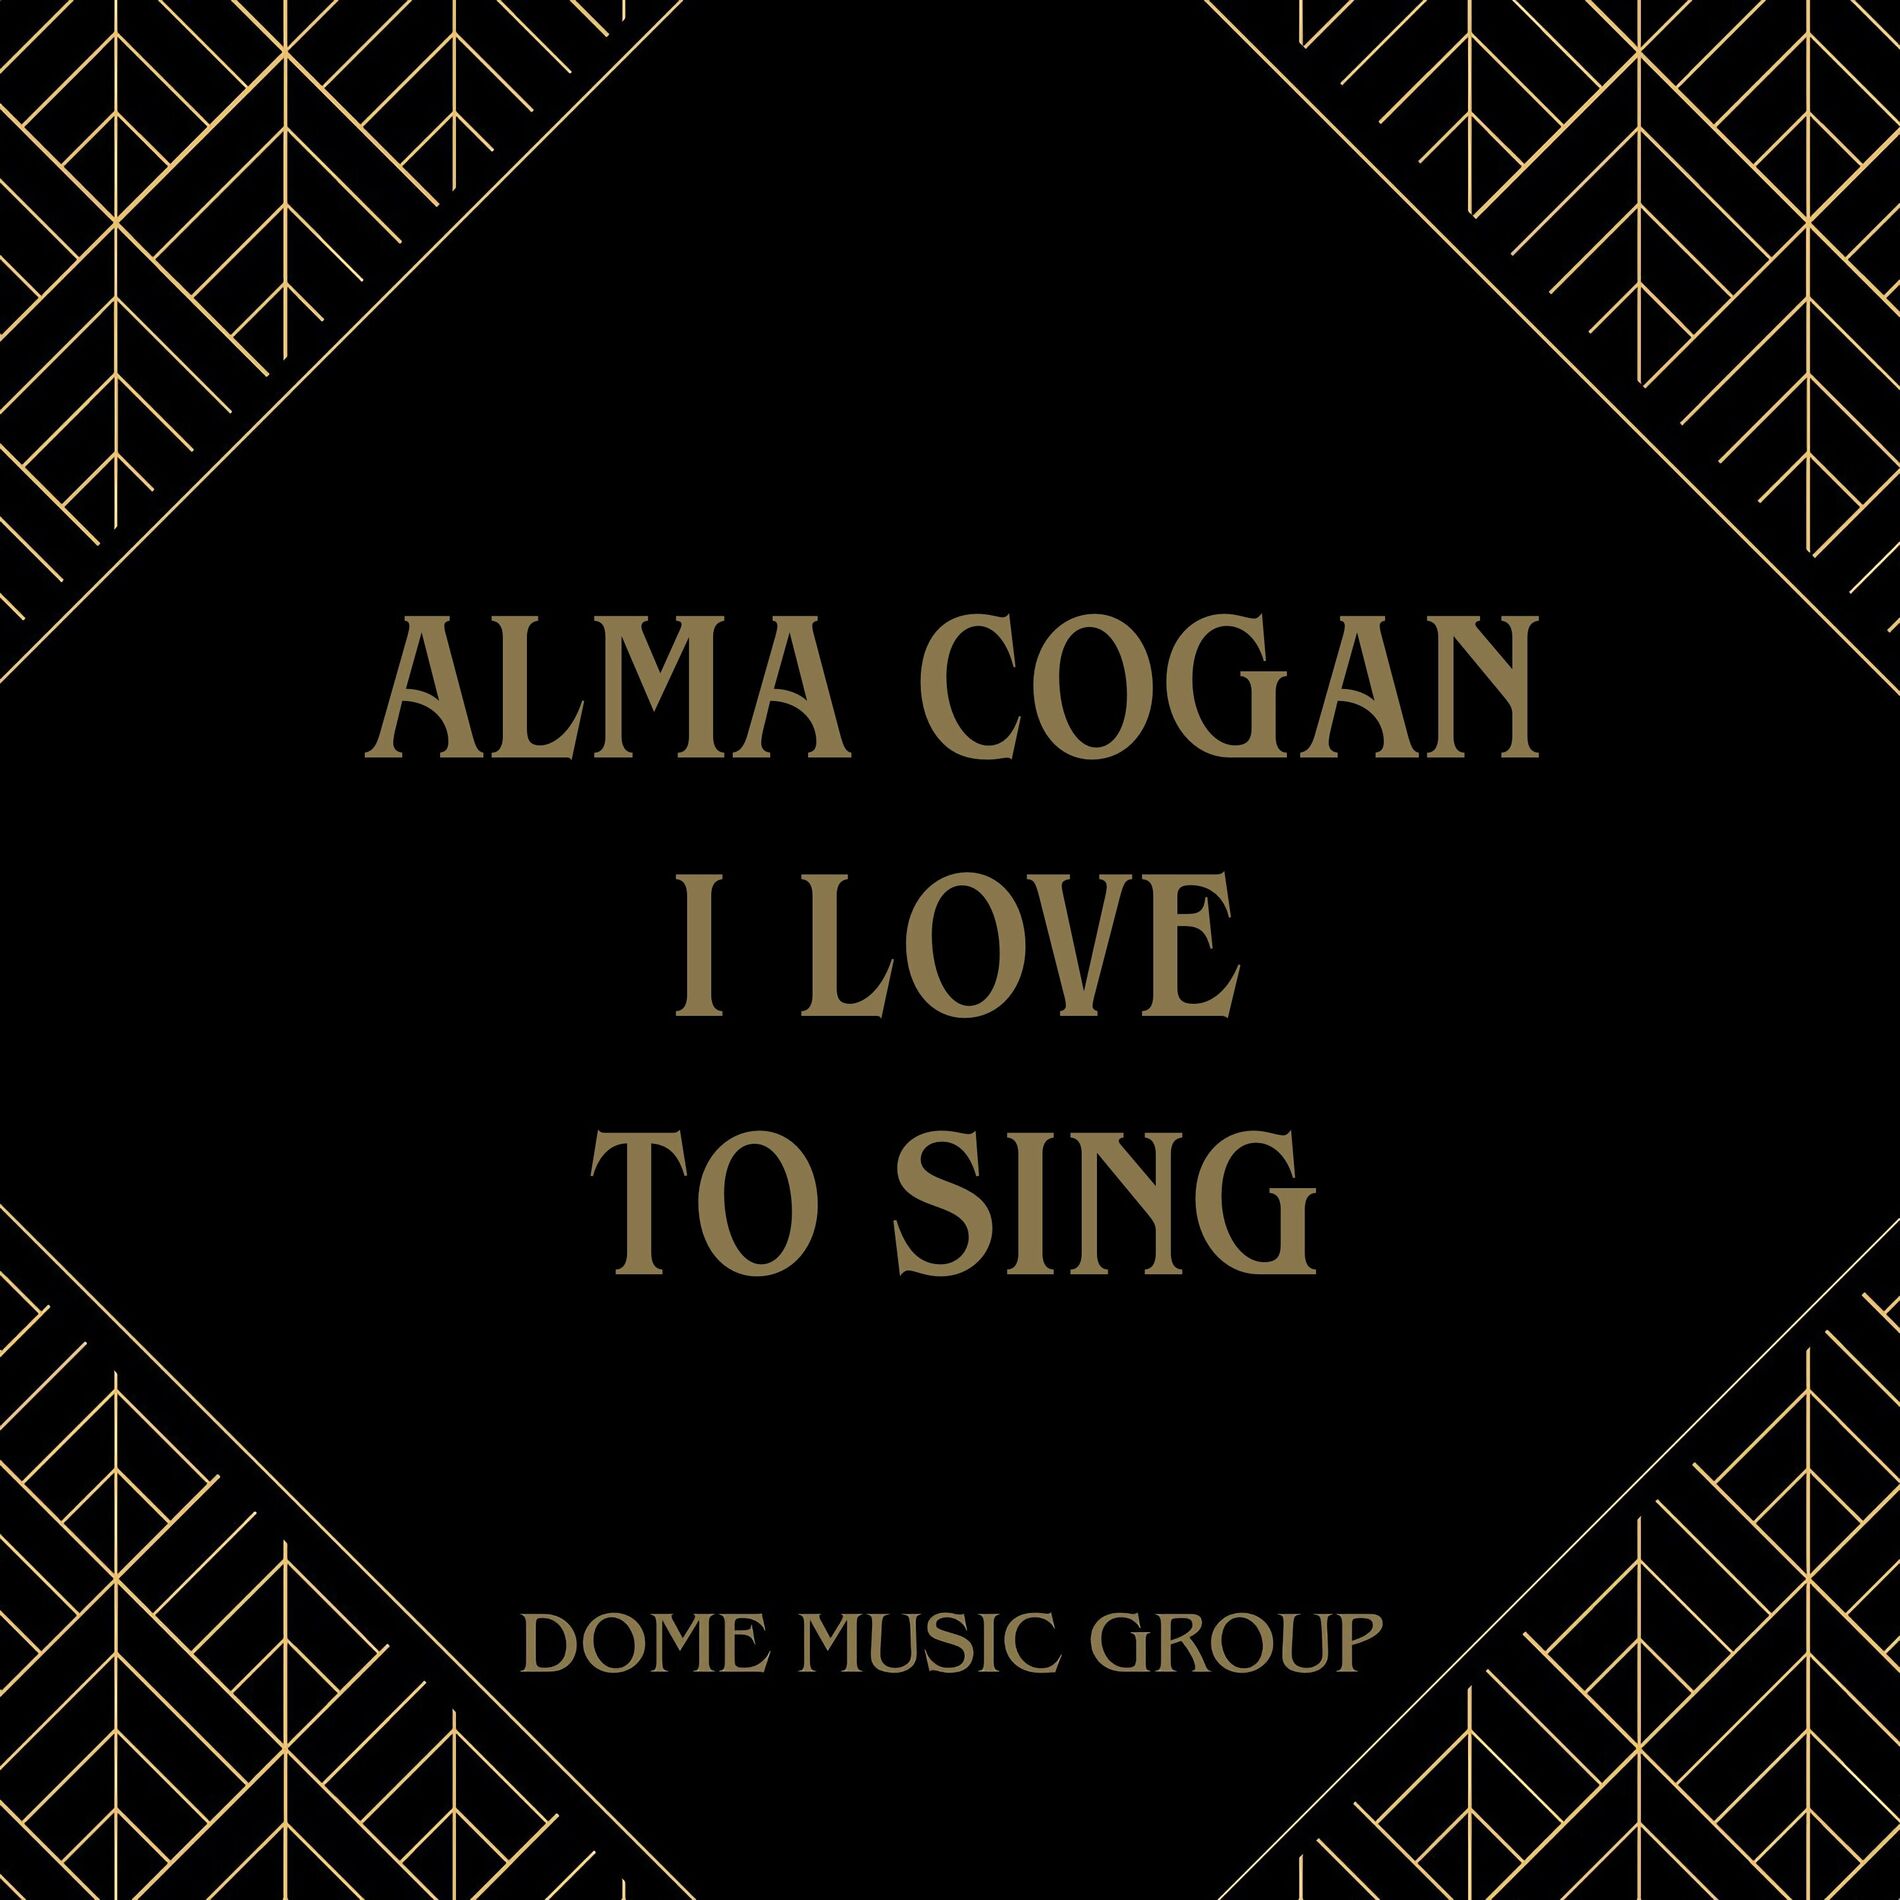 Alma Cogan: albums, songs, playlists | Listen on Deezer